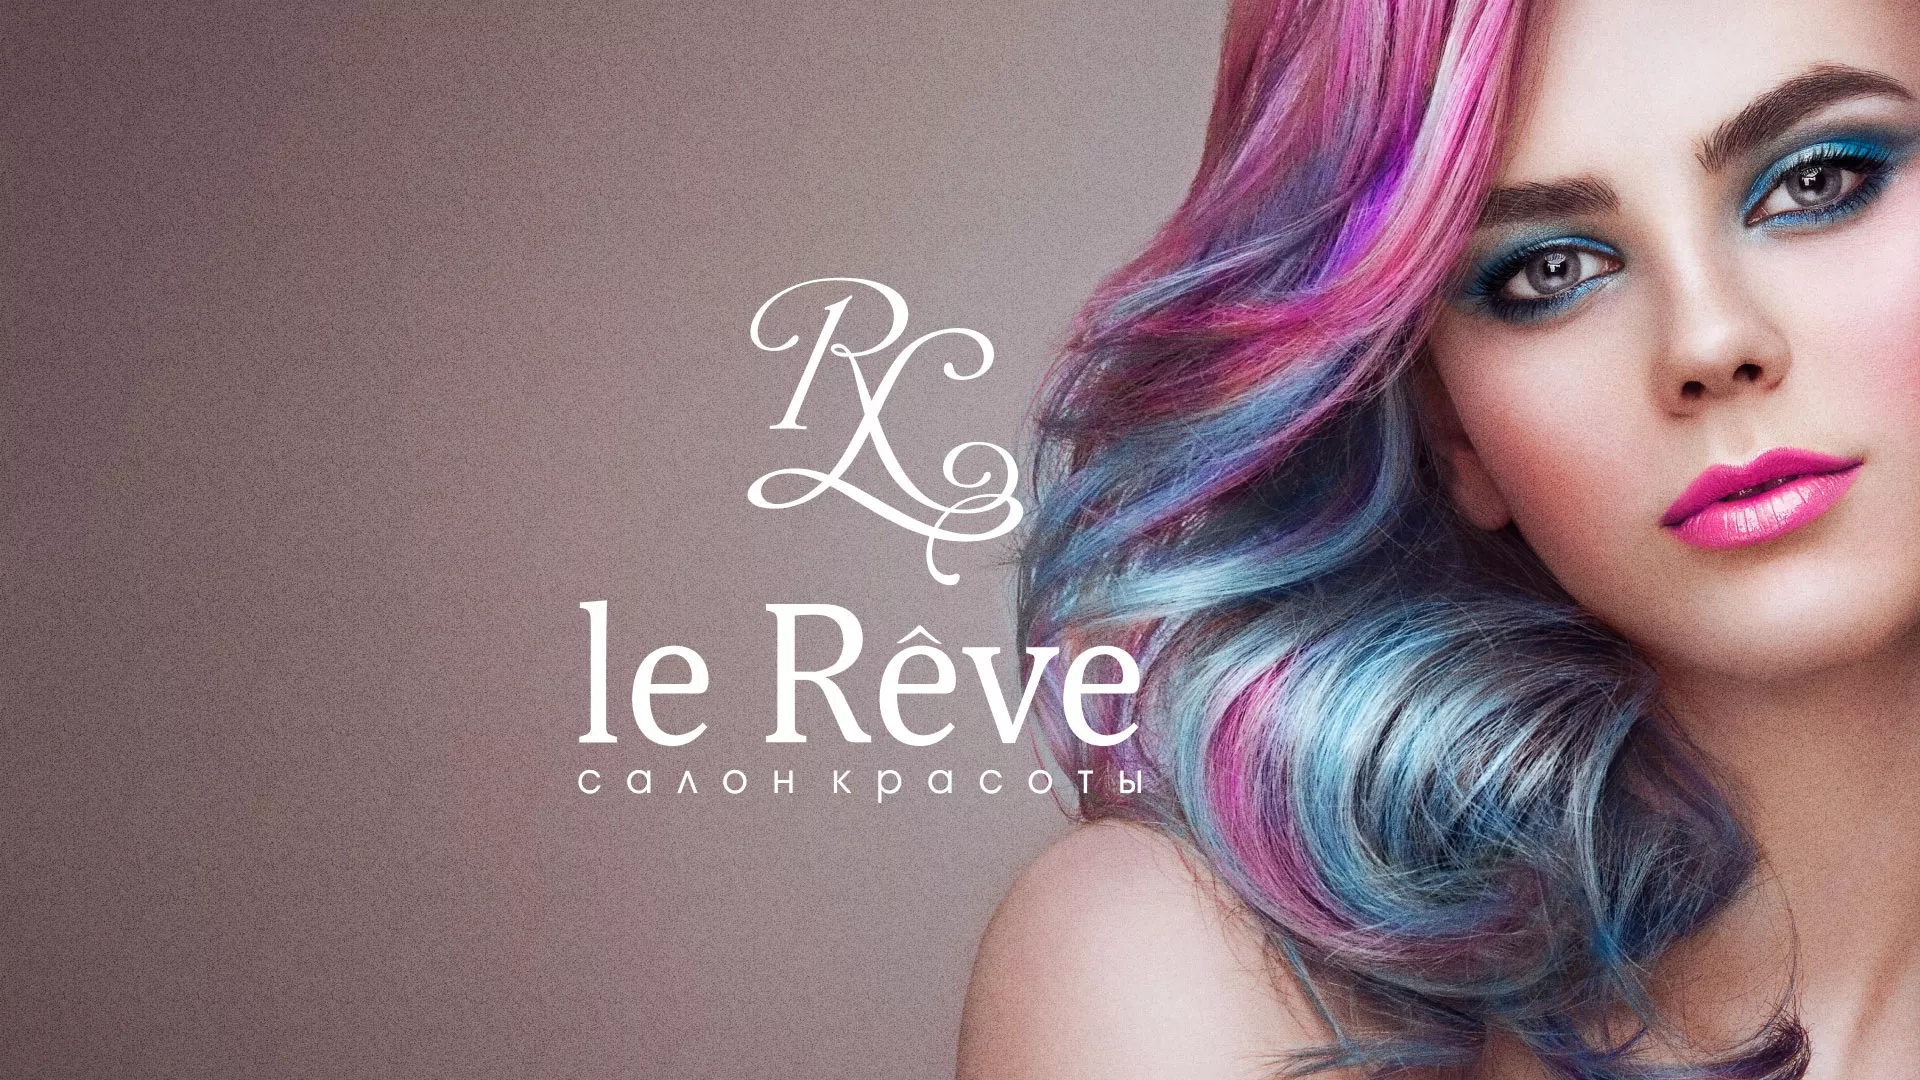 Создание сайта для салона красоты «Le Reve» в Кандалакше